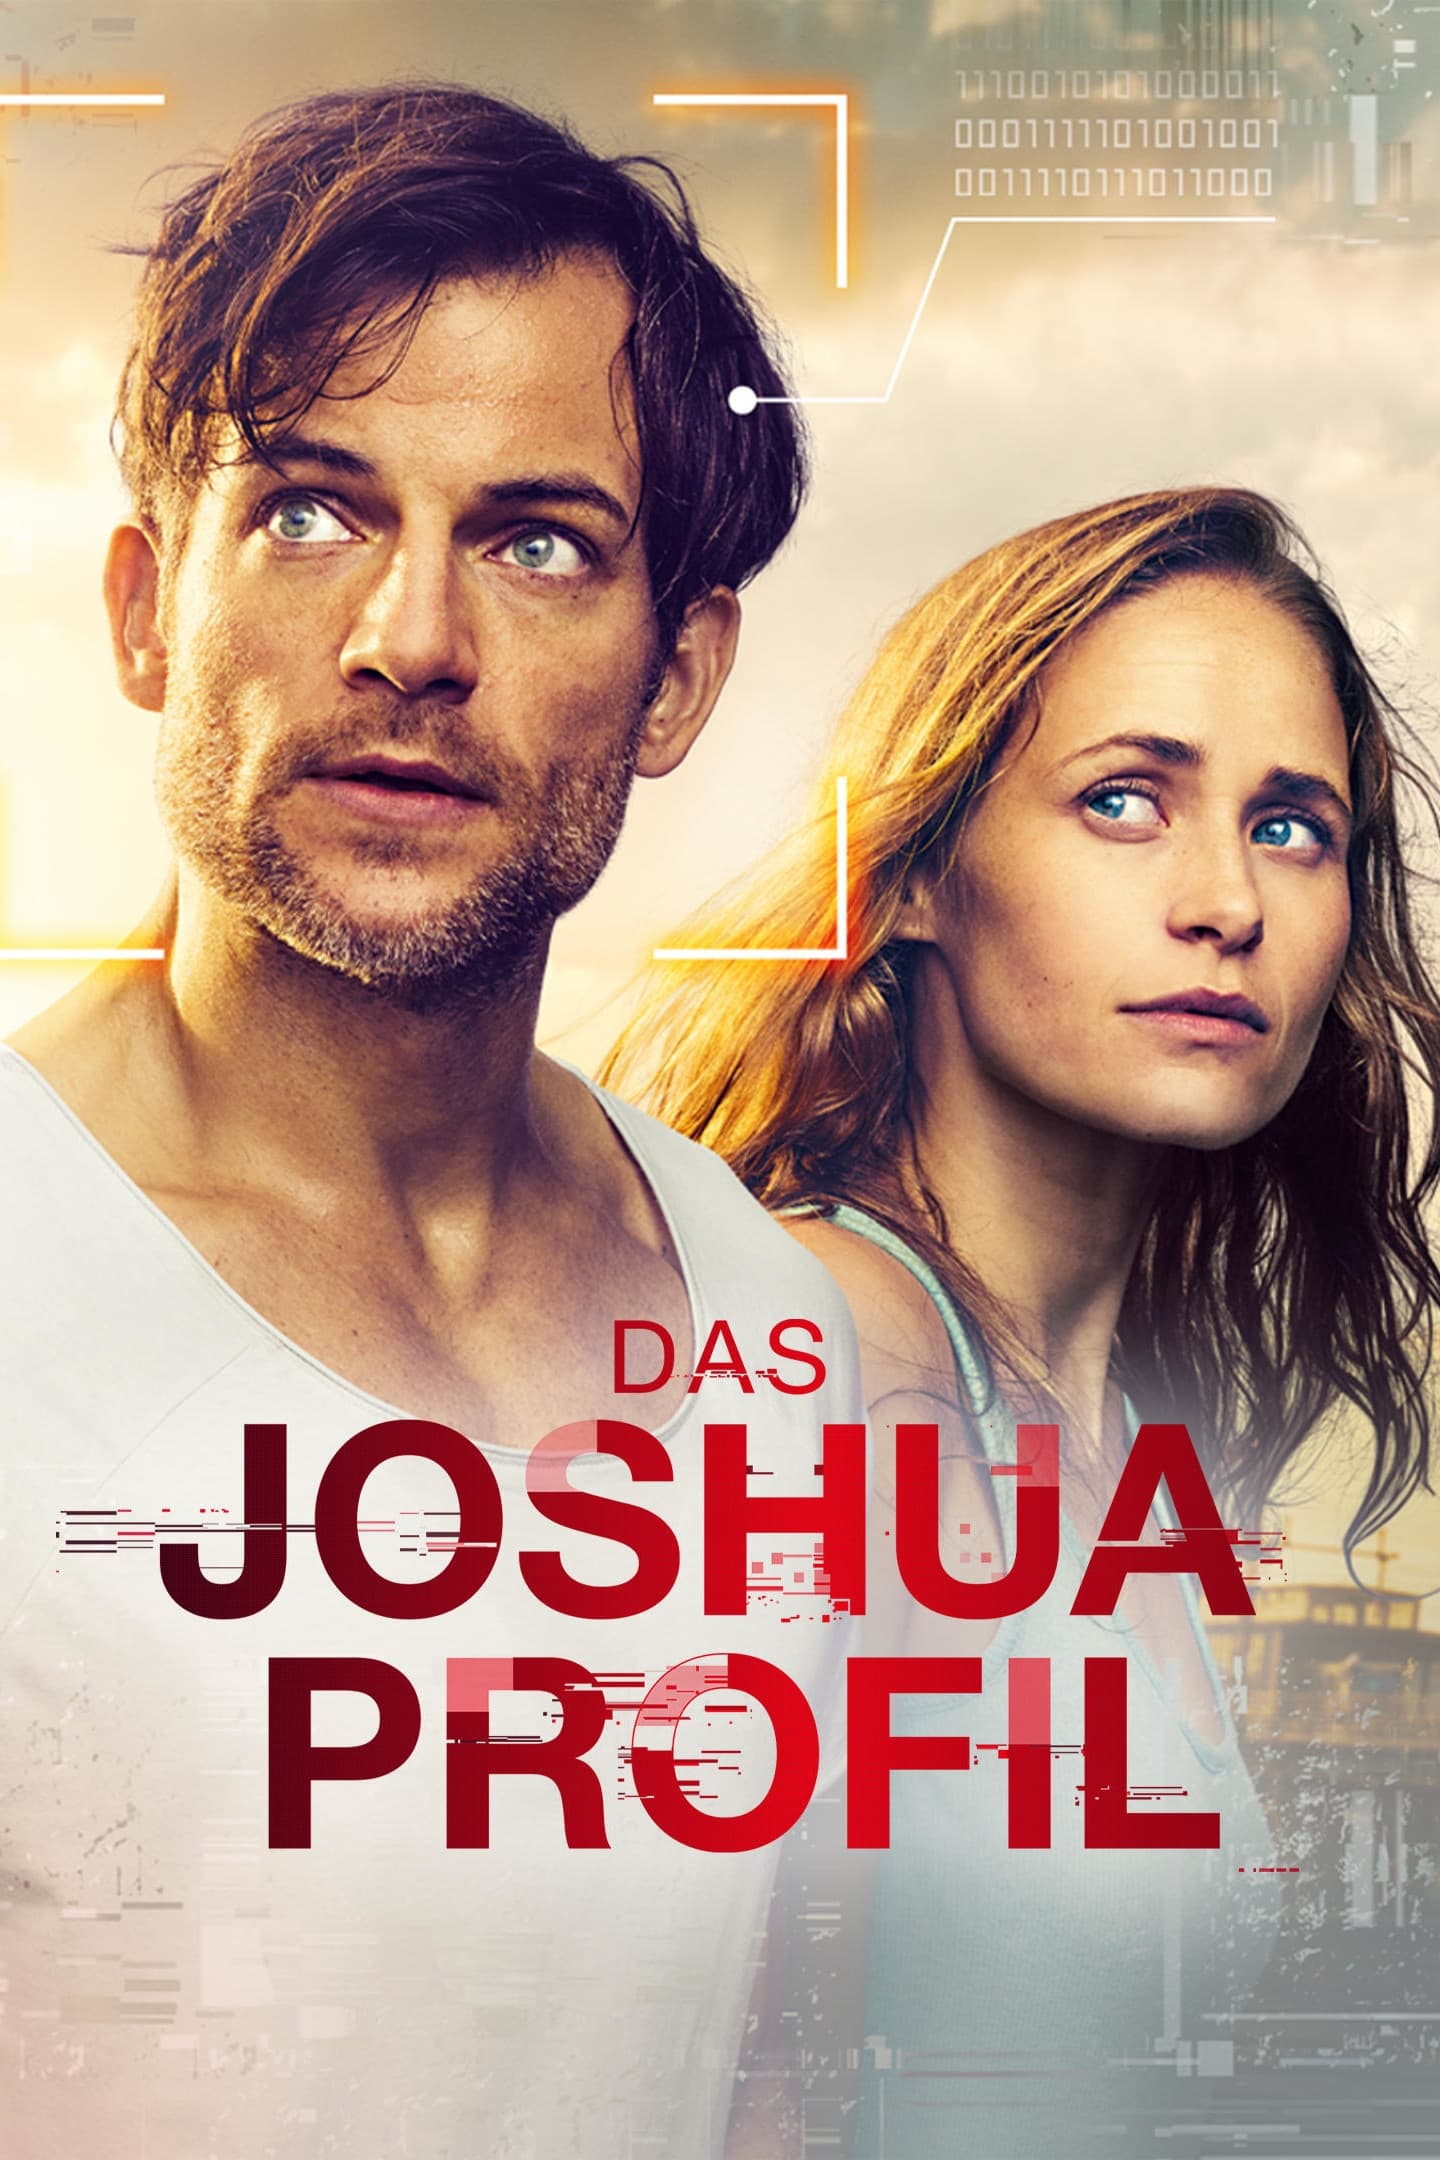 Das Joshua-Profil (2018)